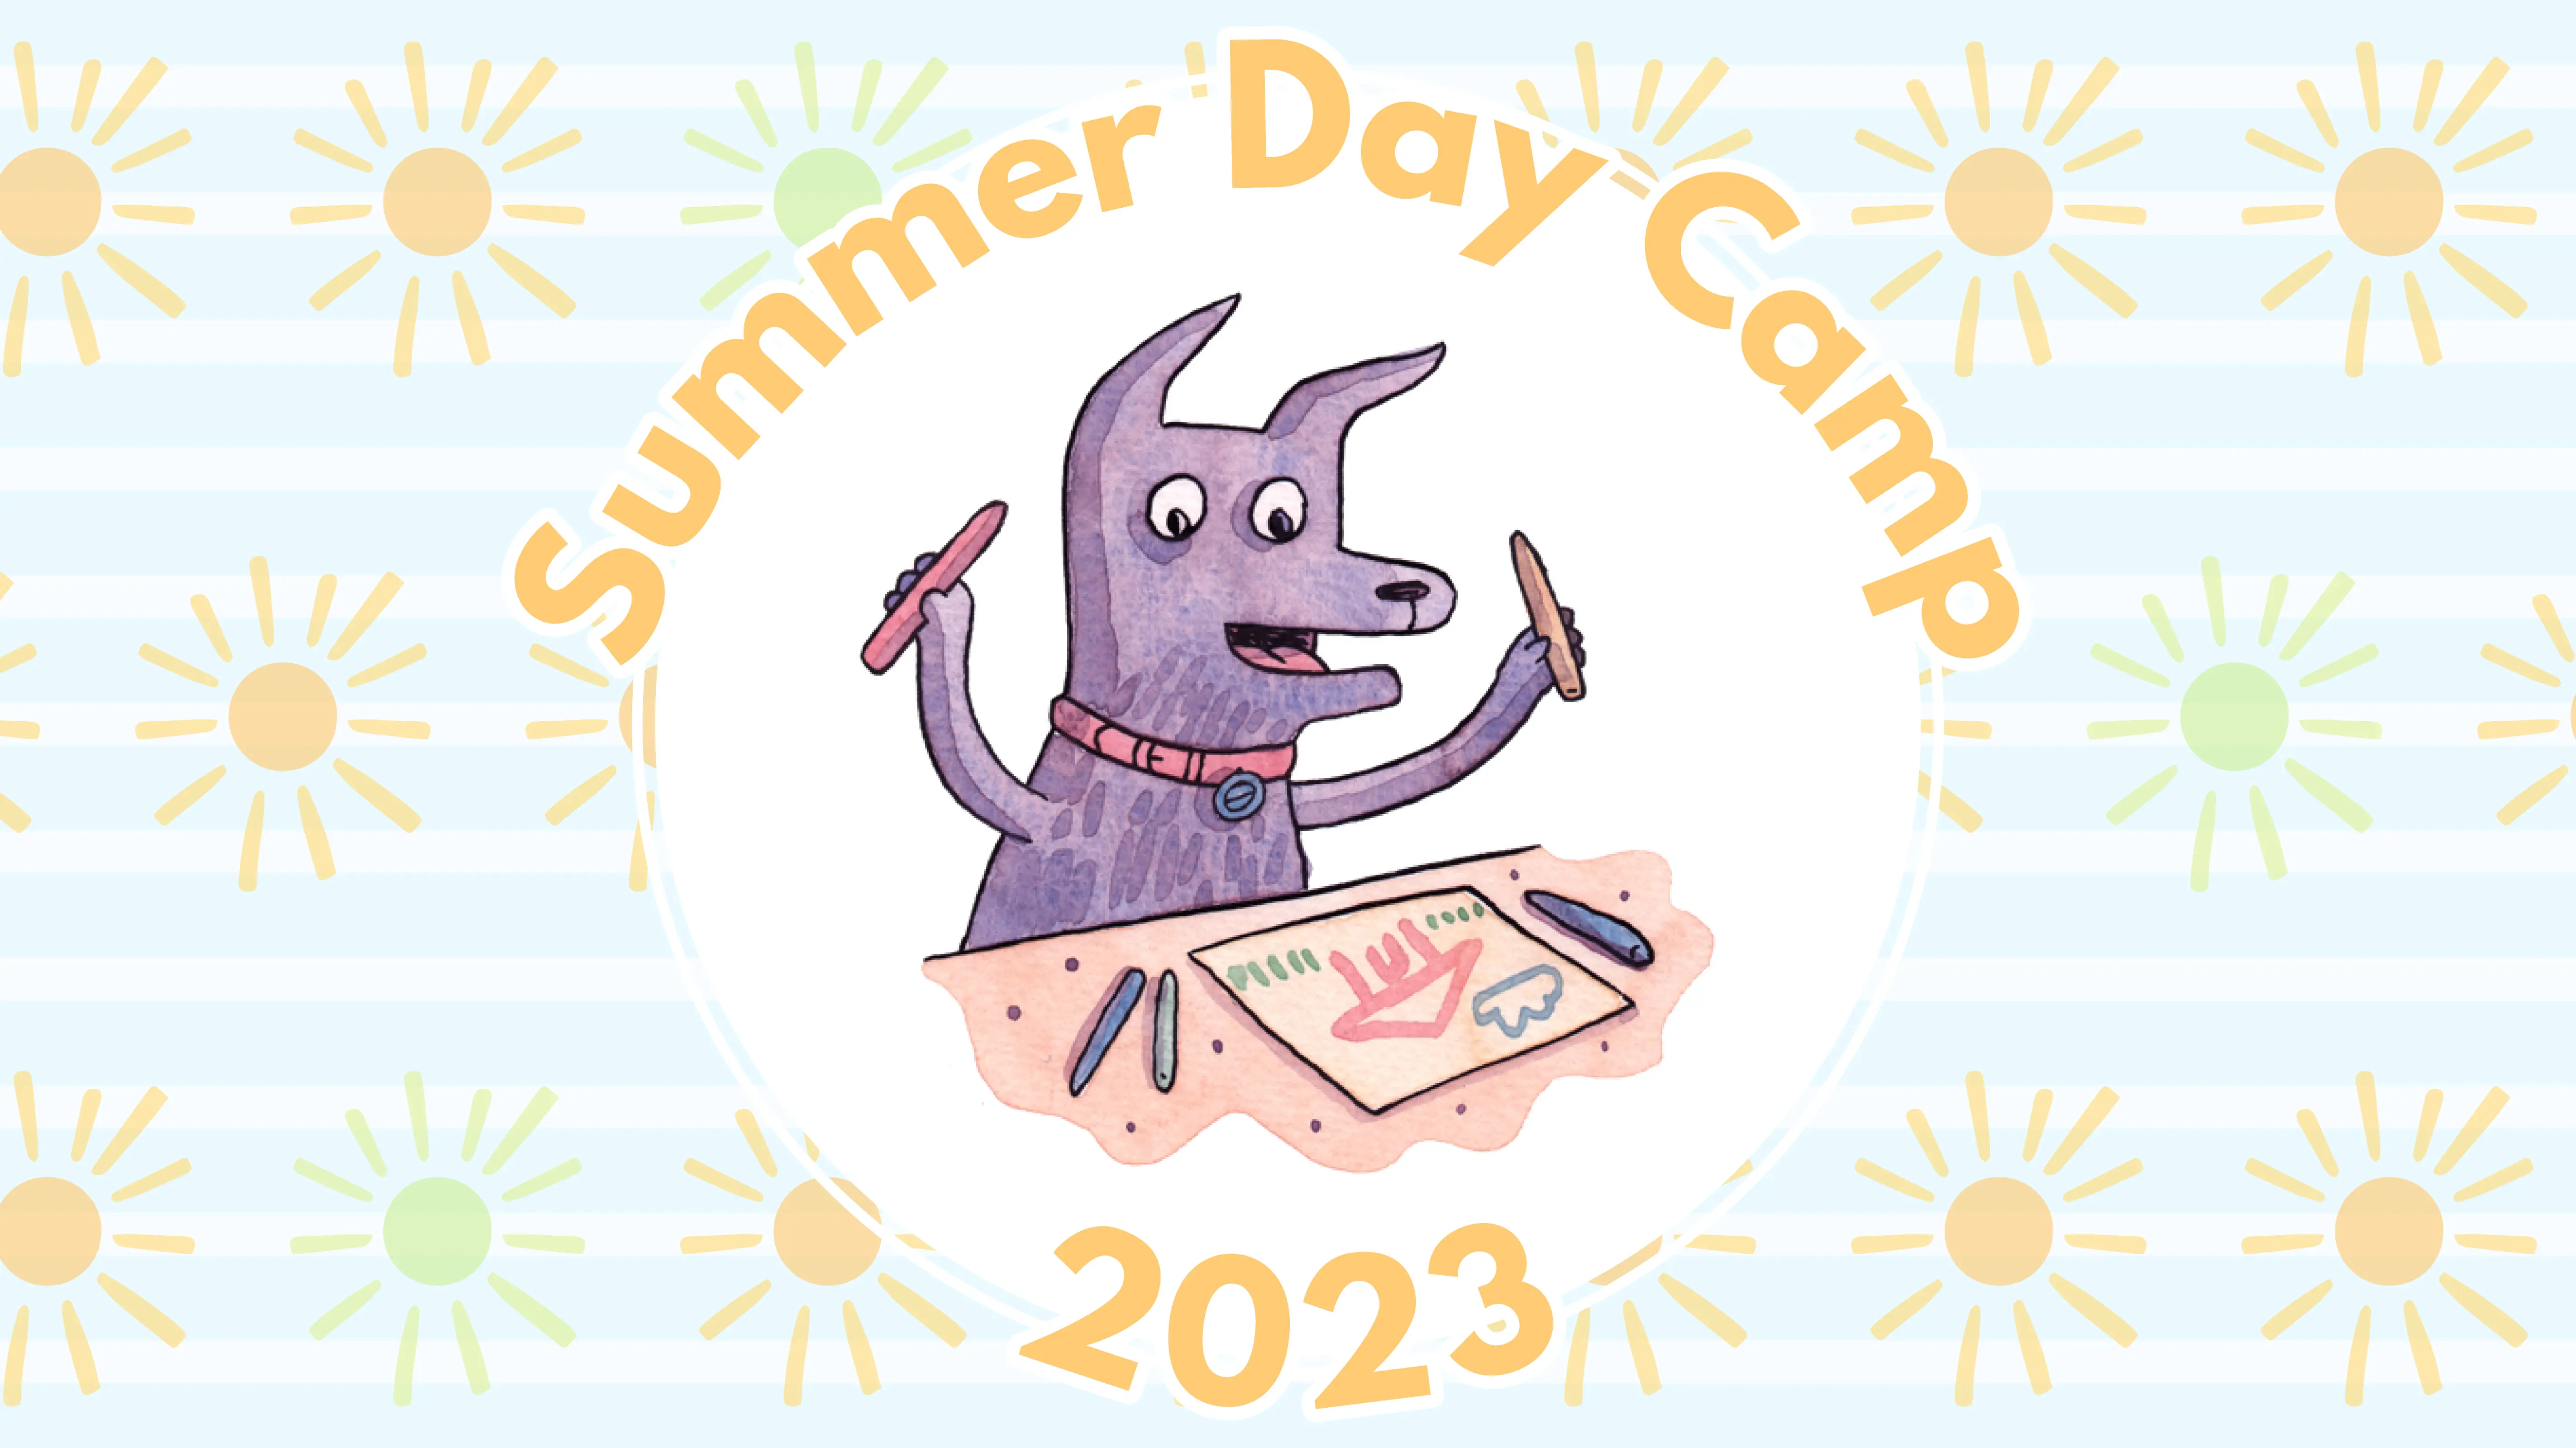 KA Summer Day Camp 2023